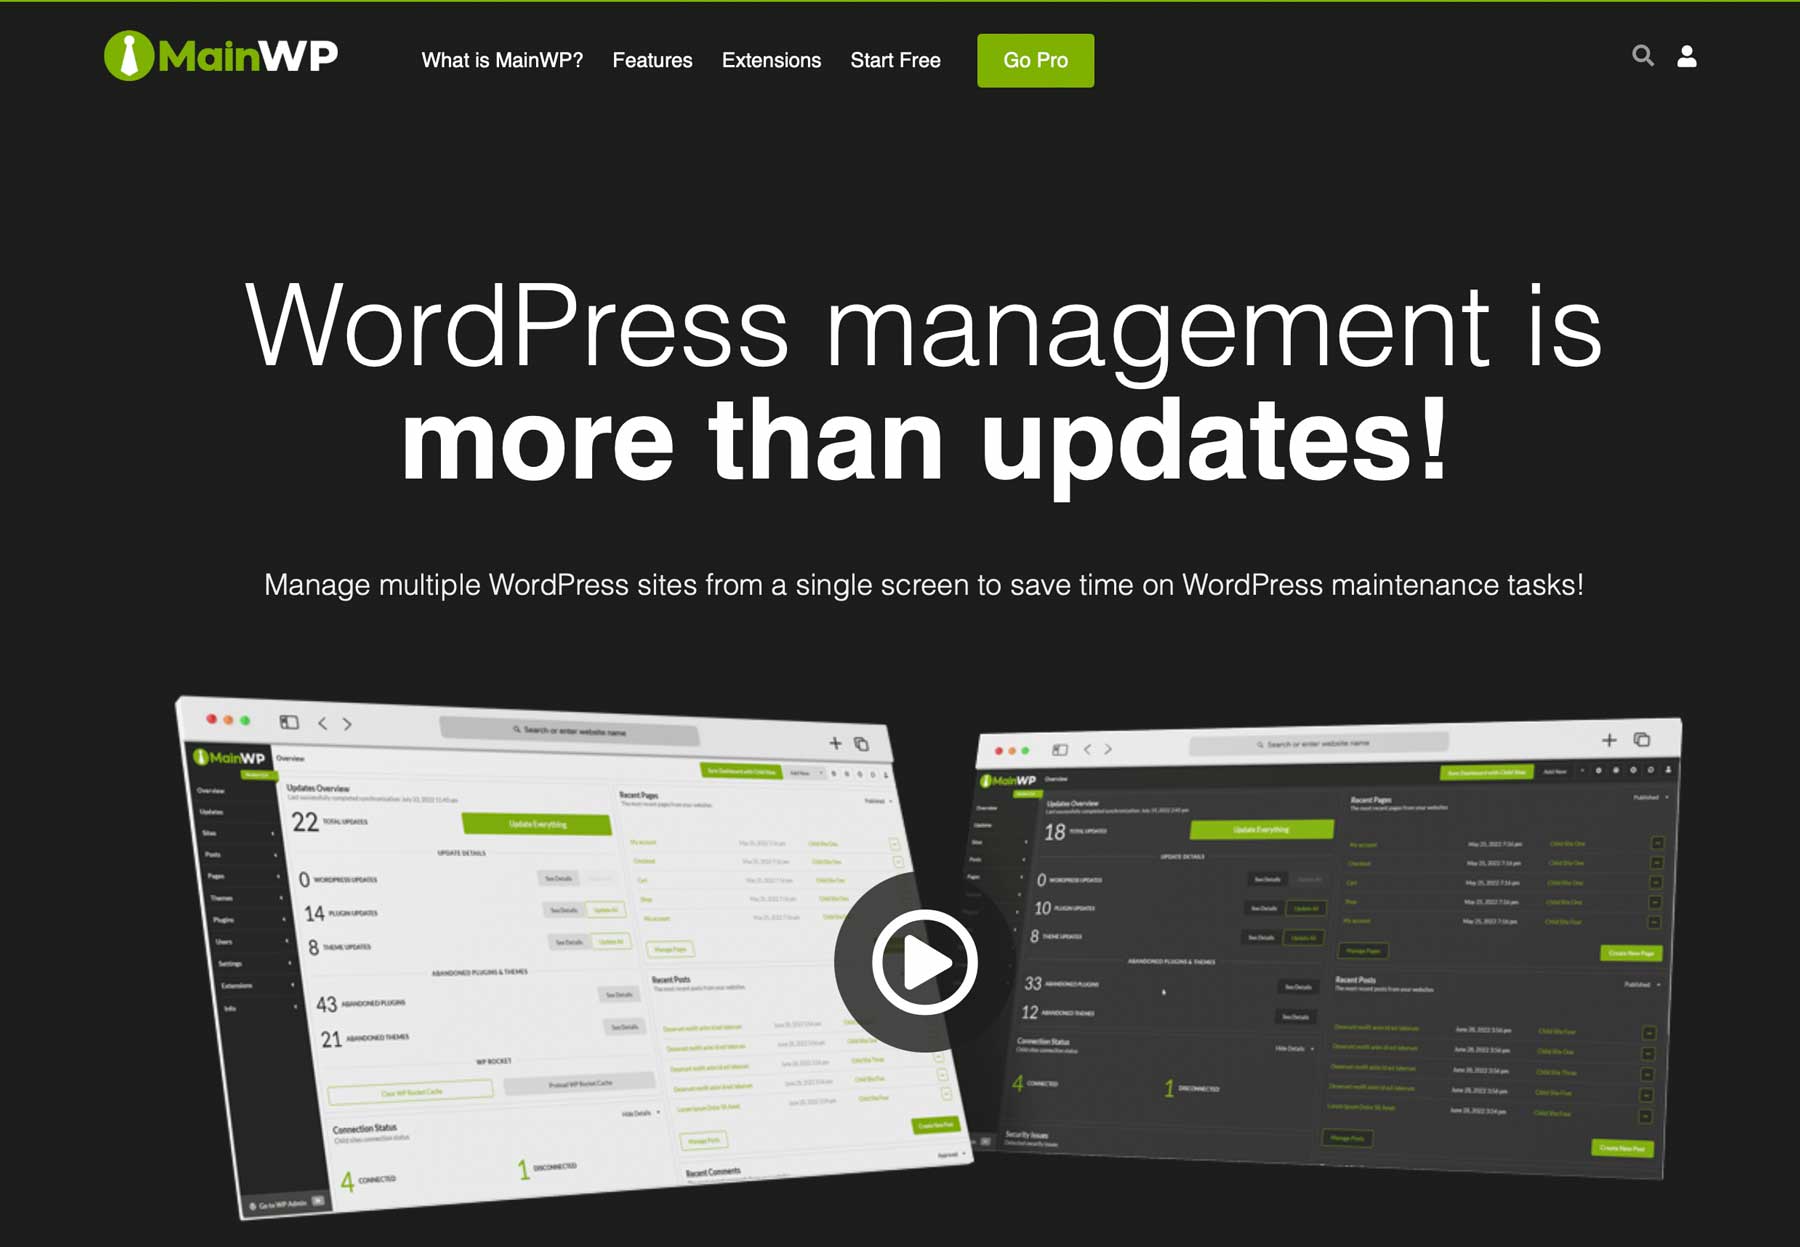 MainWP WordPress site management tools